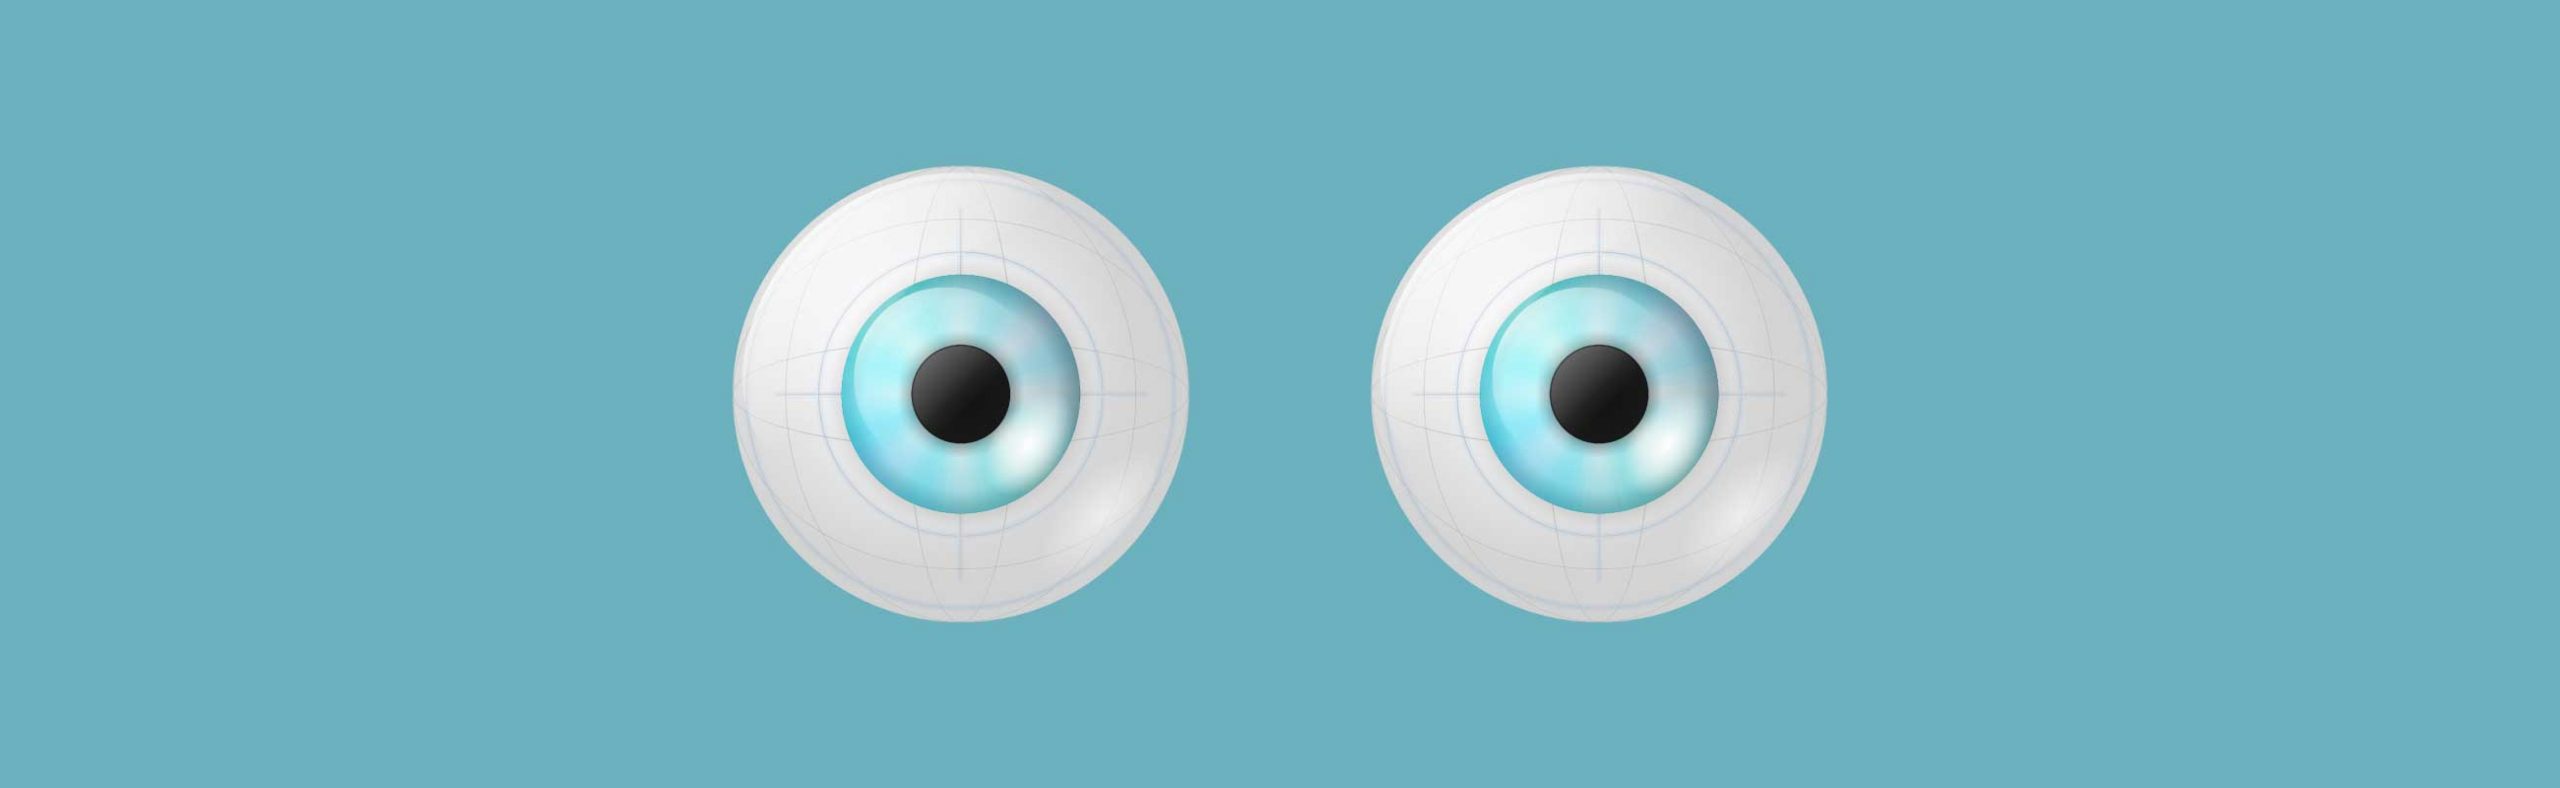 Eye-Tracking Terminology